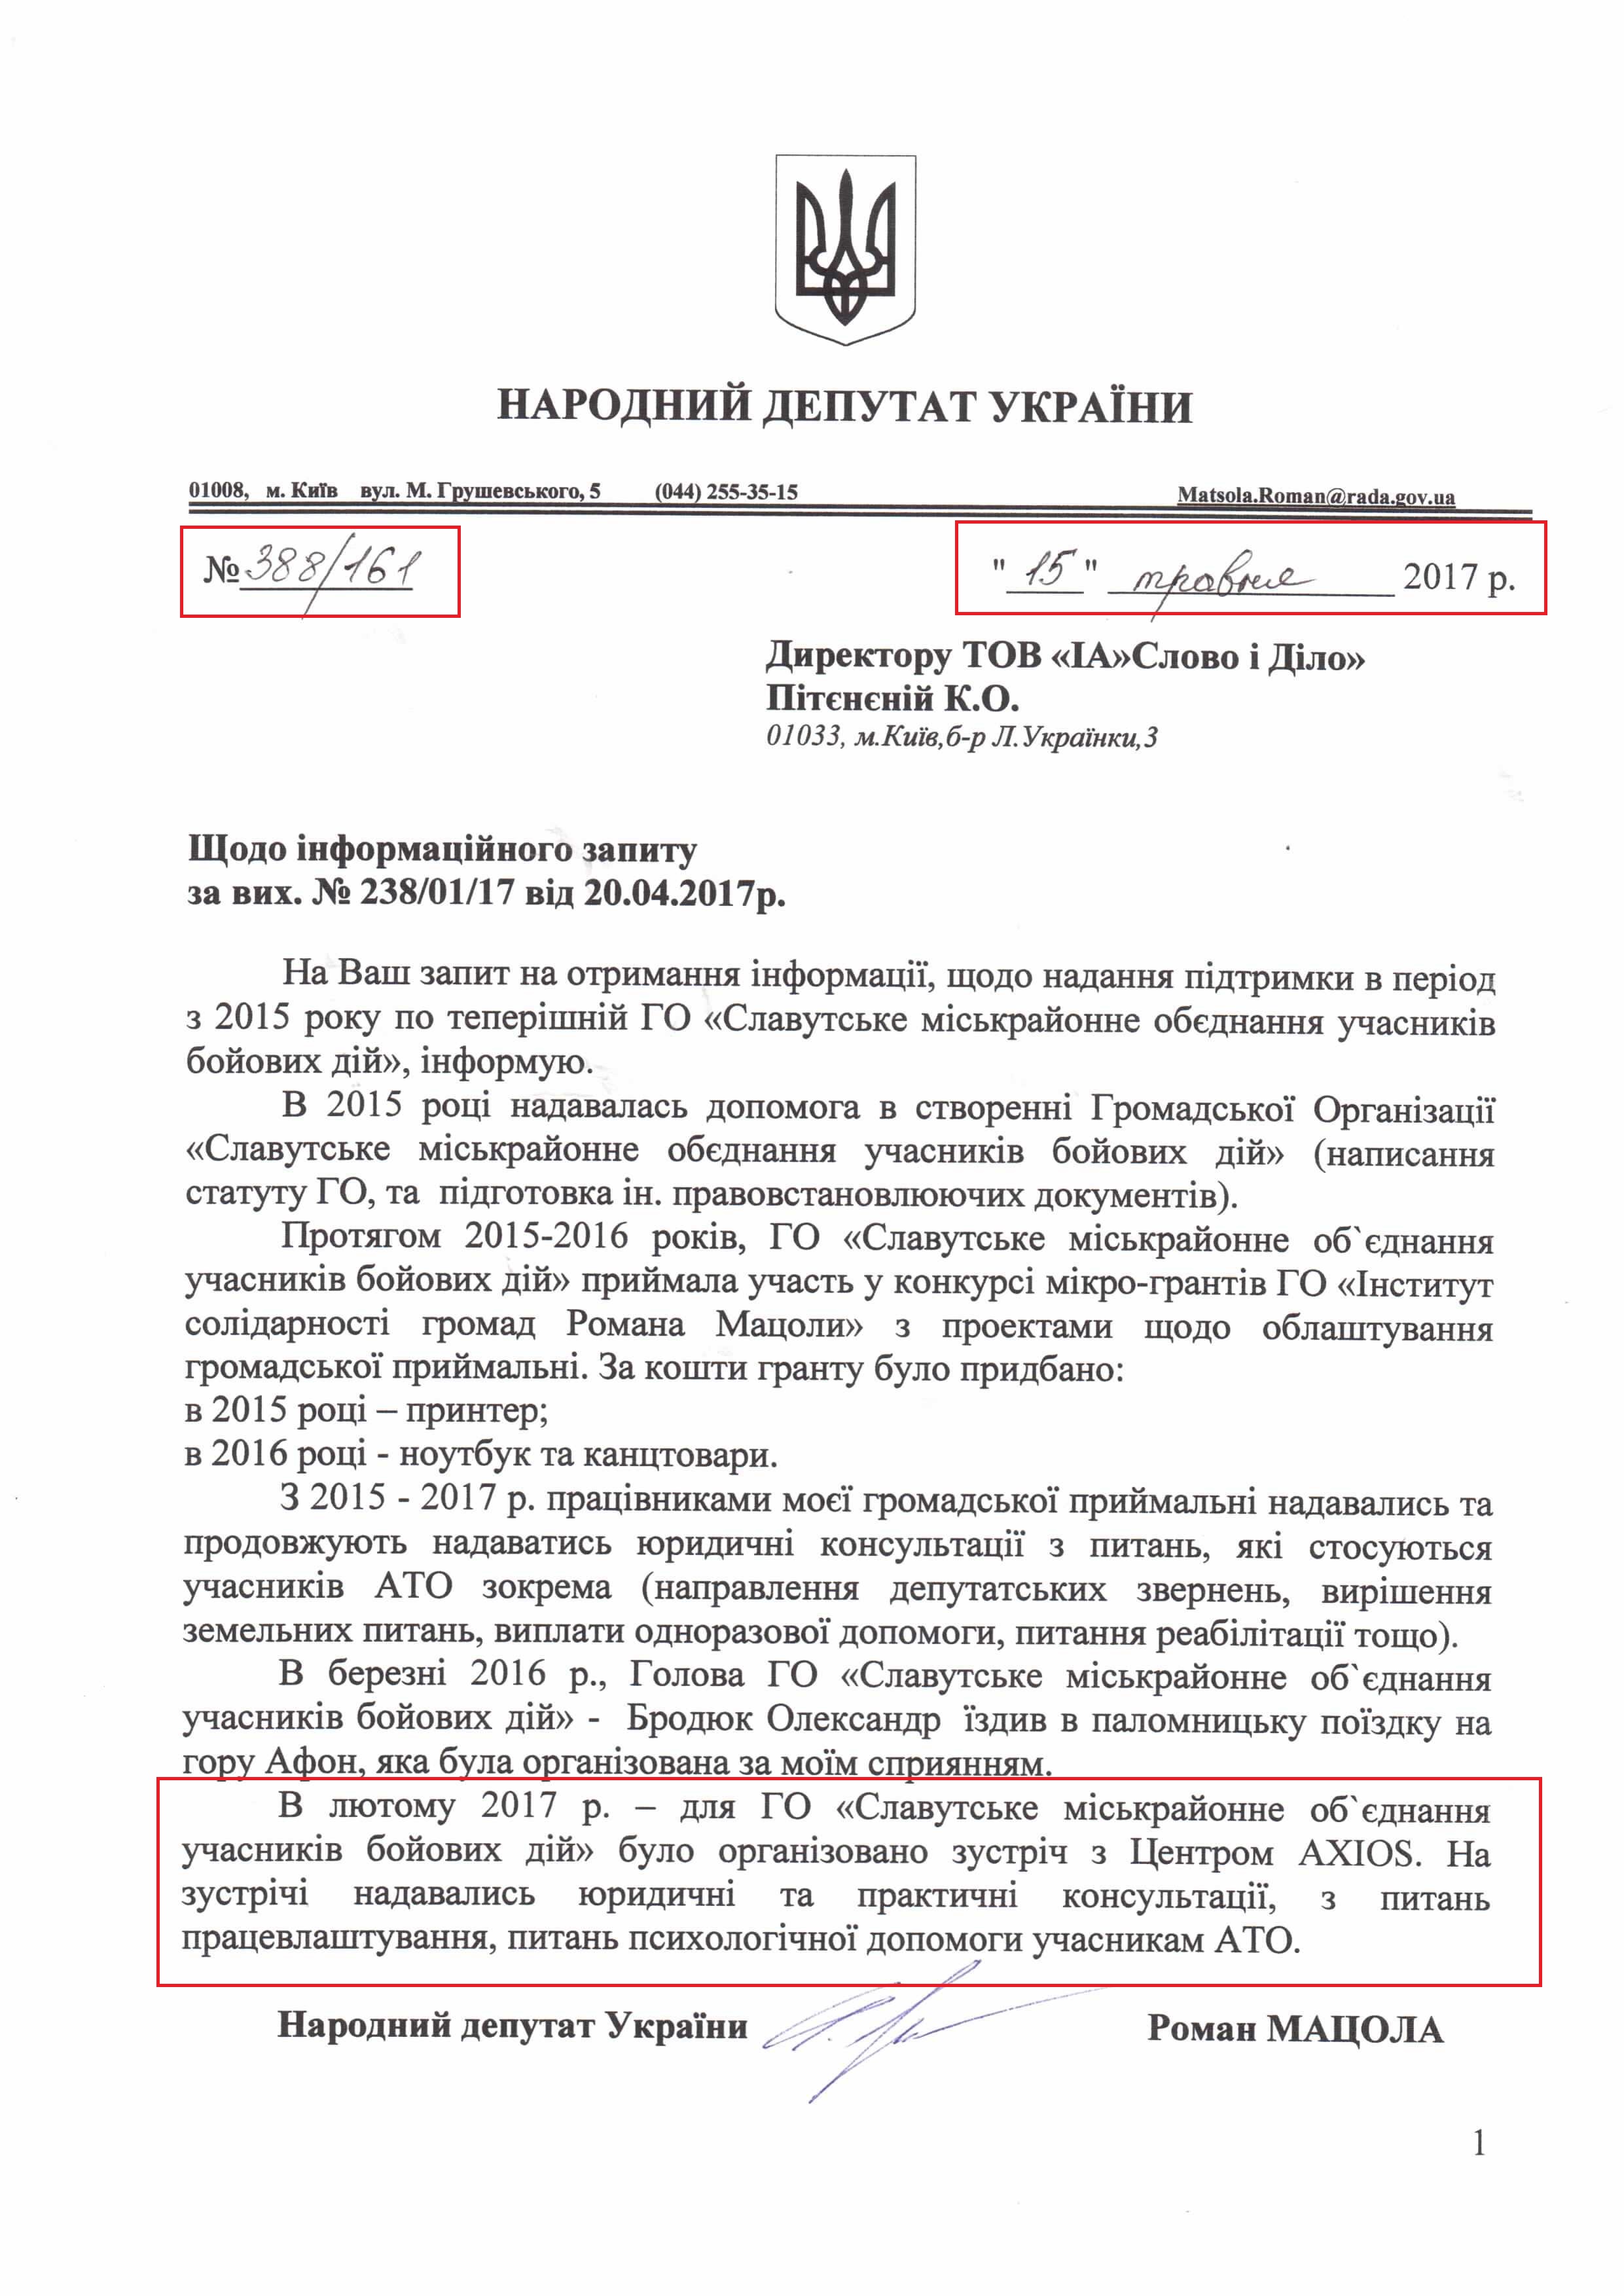 лист народного депутата України Романа Мацоли №388/161 від 15 травня 2017 року